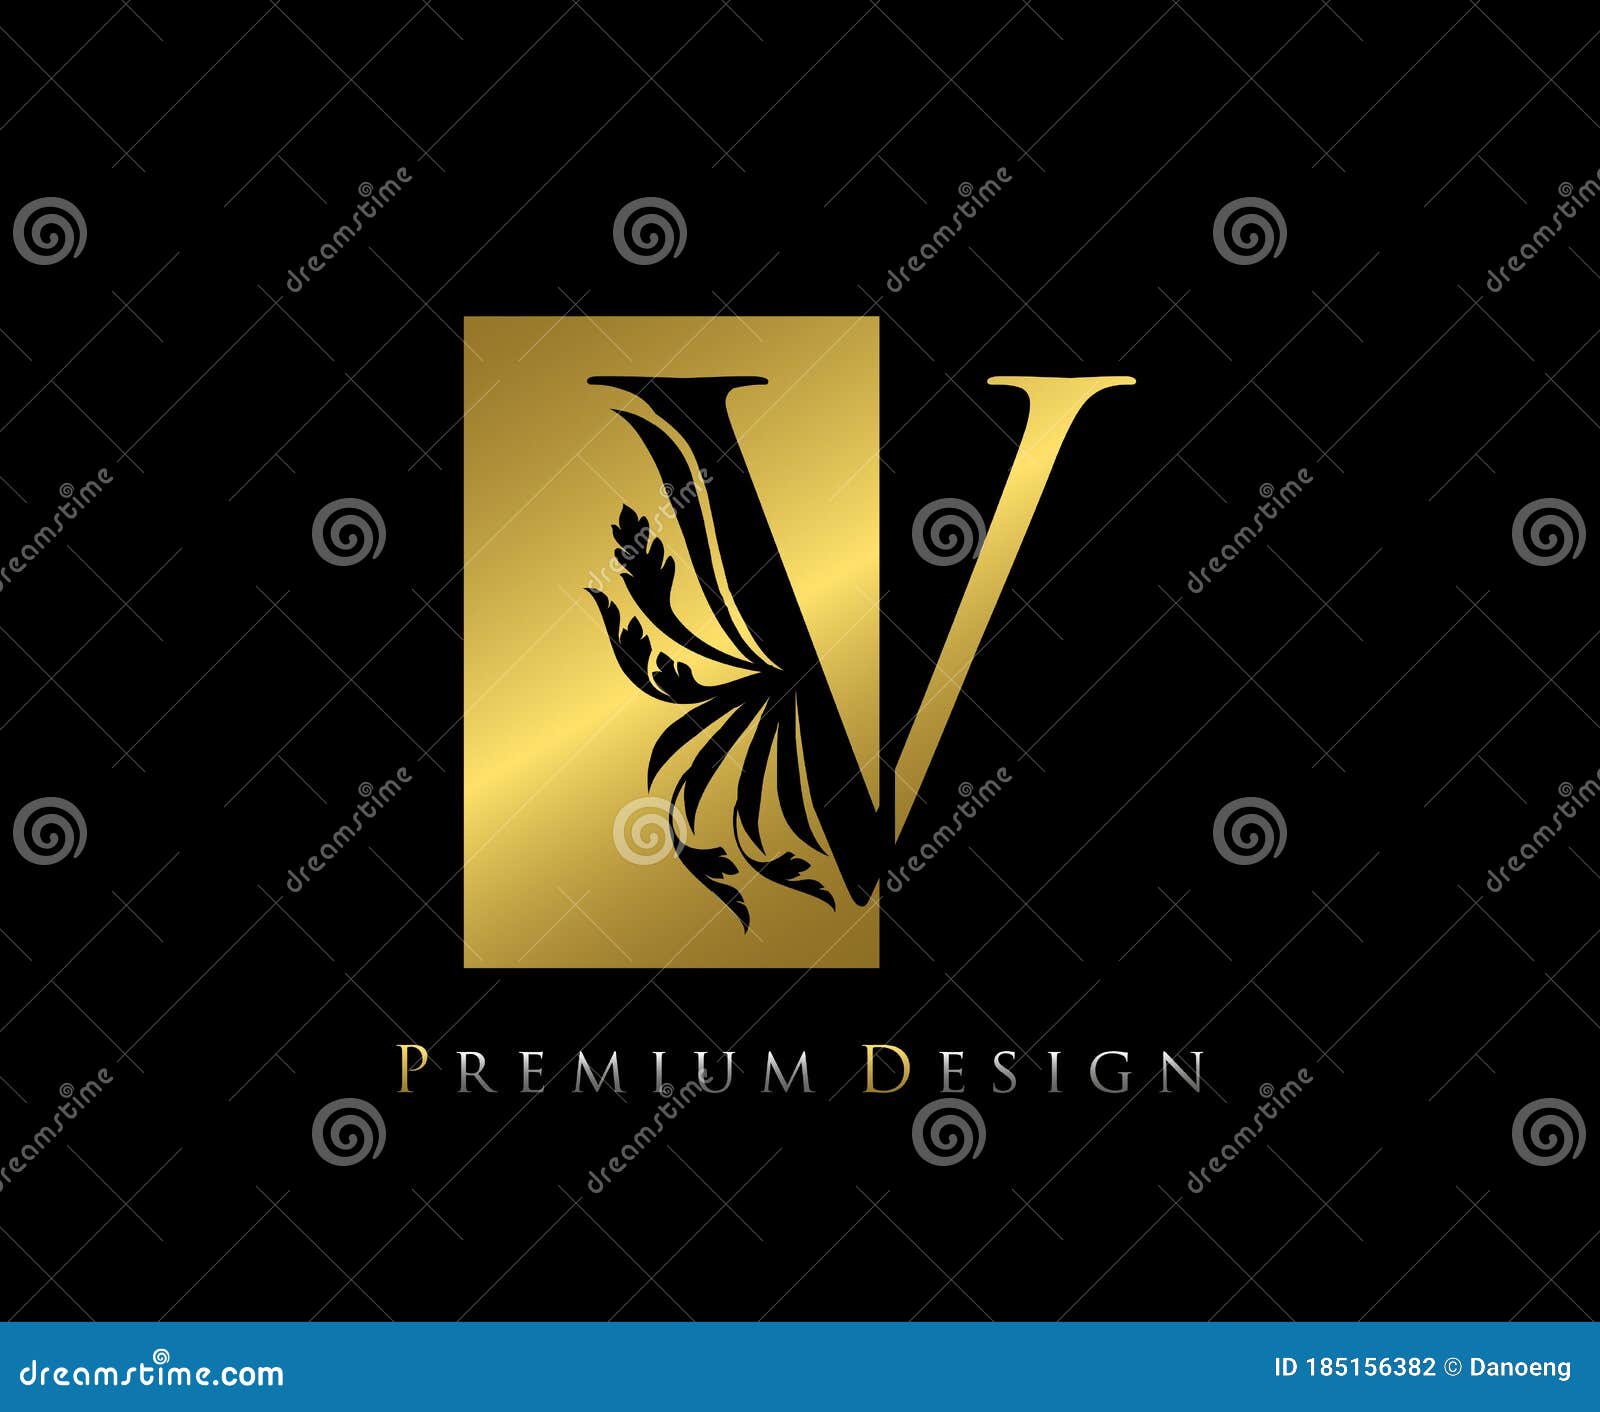 Free Vector  Elegant vintage letter v logo